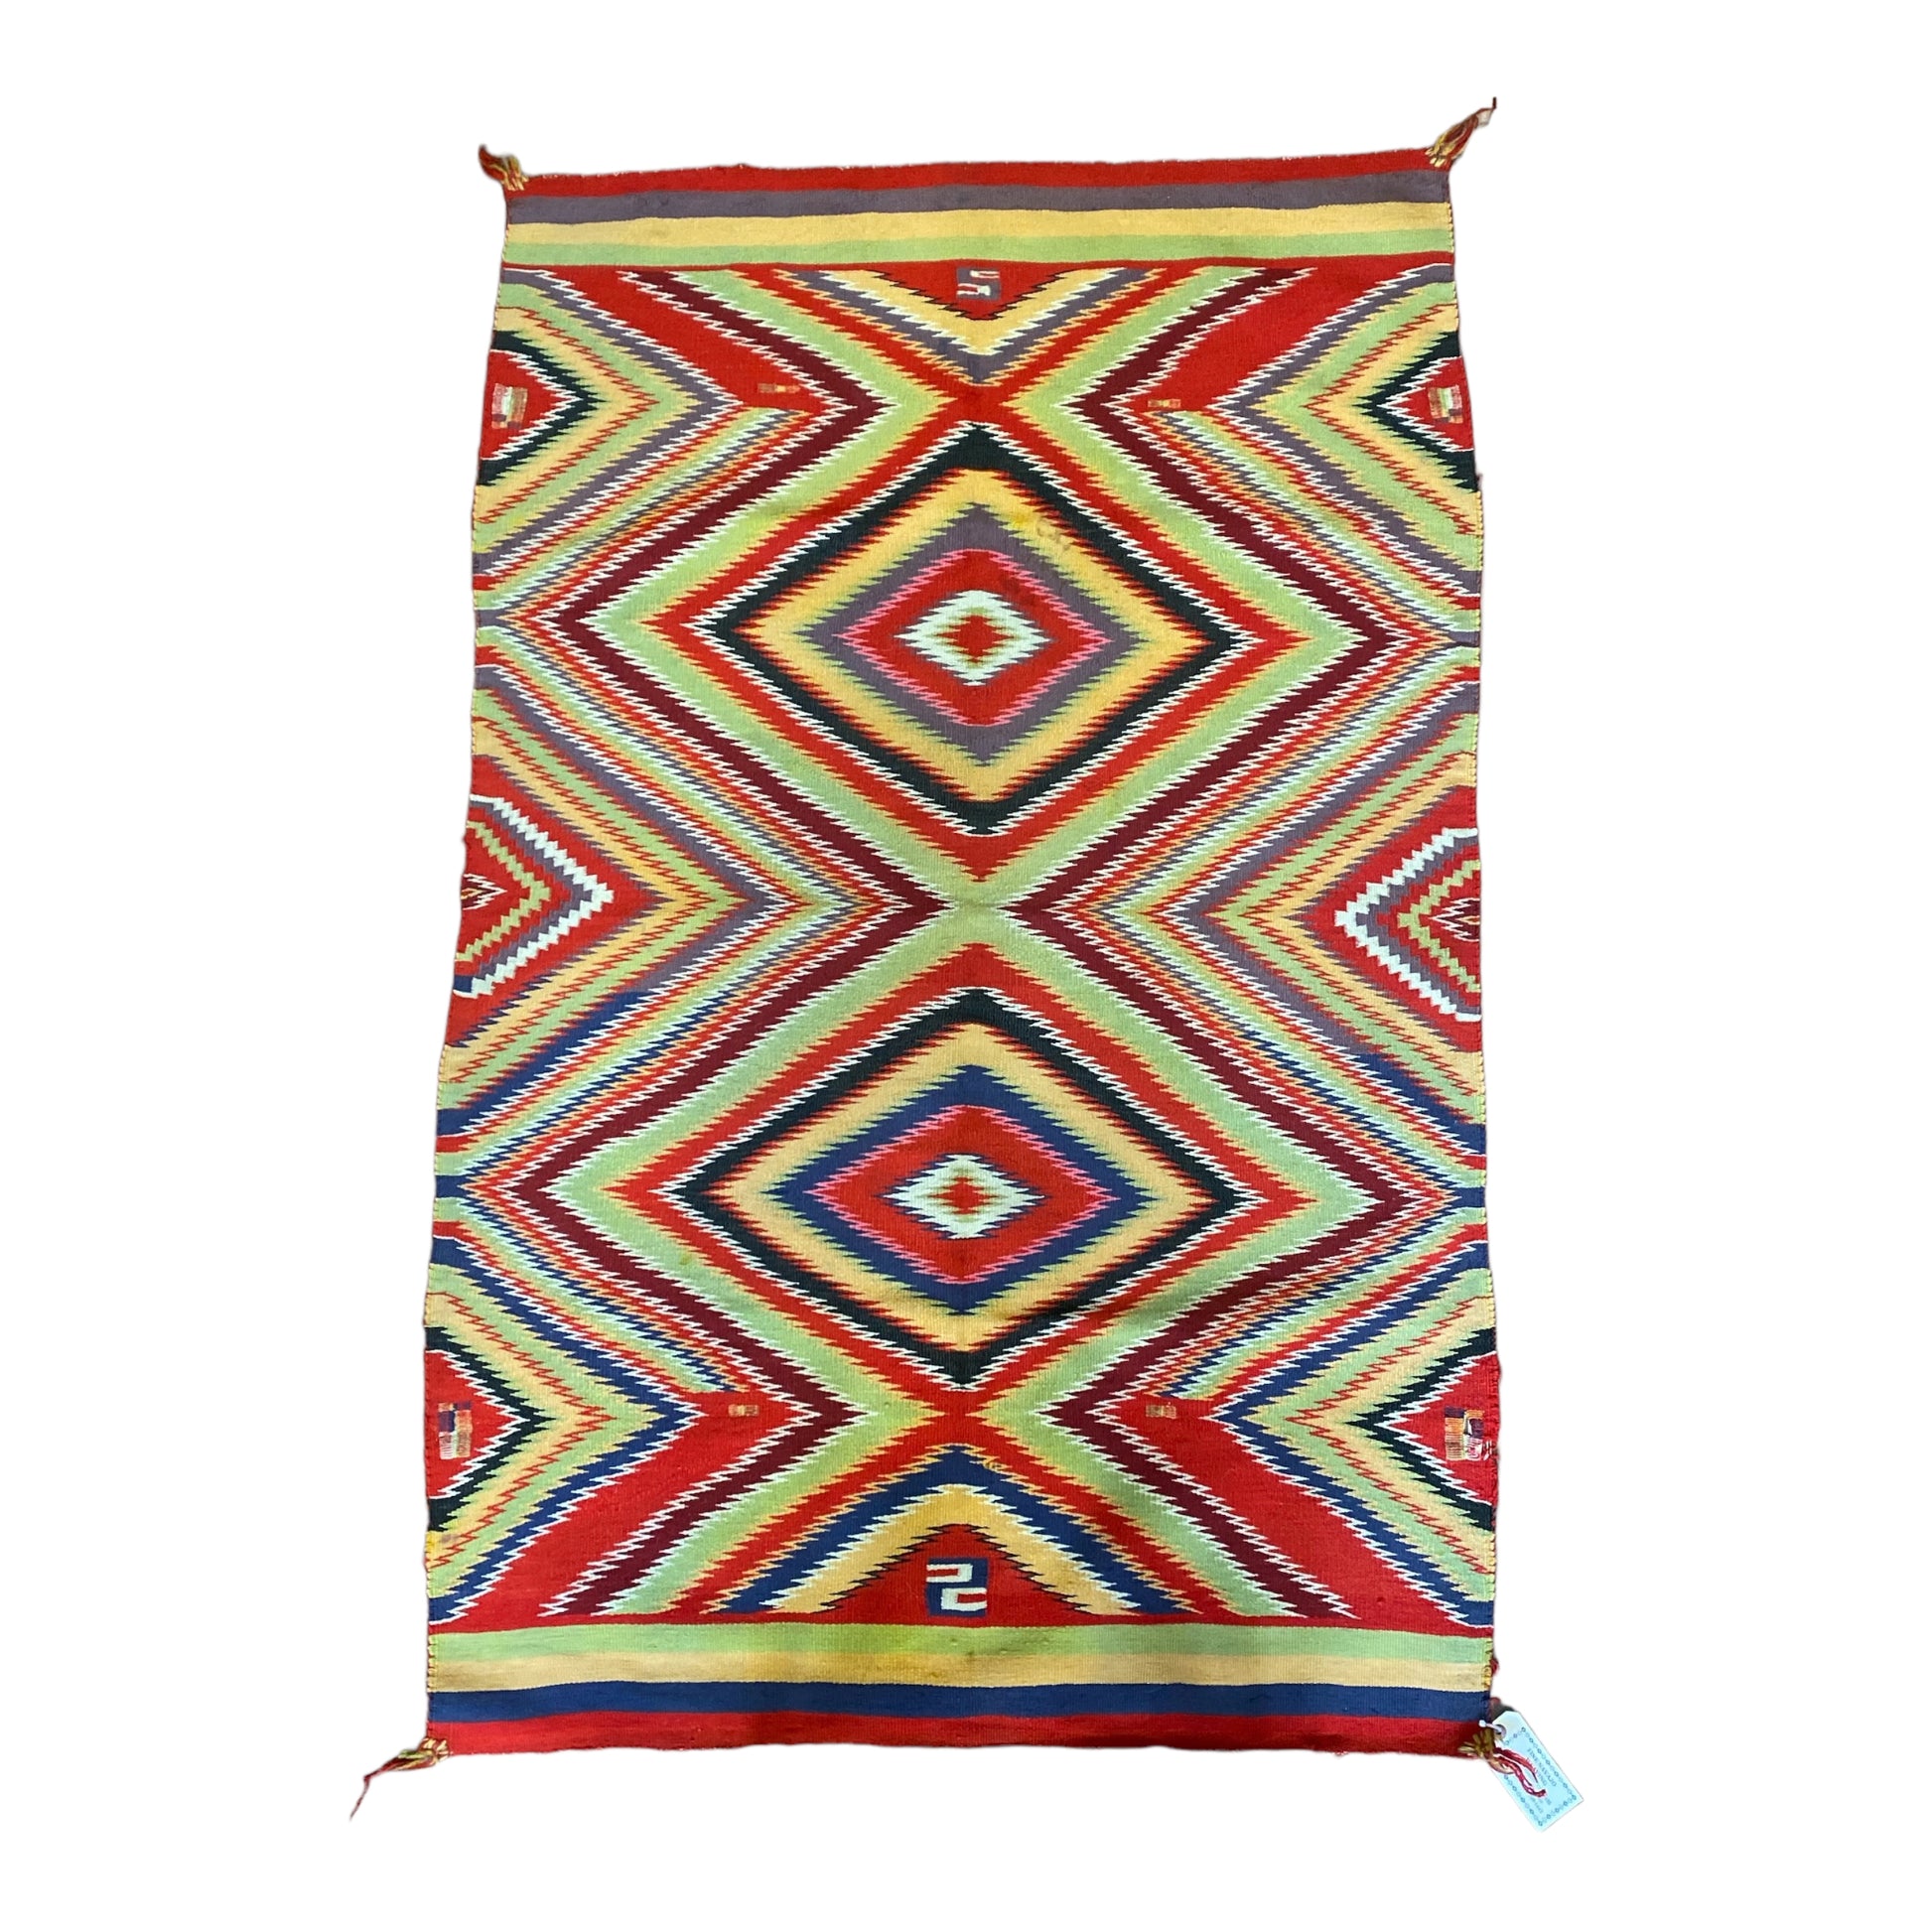 Navajo Germantown weaving, navajo rug for sale, antique navajo weaving, telluride furnishings, telluride art gallery 